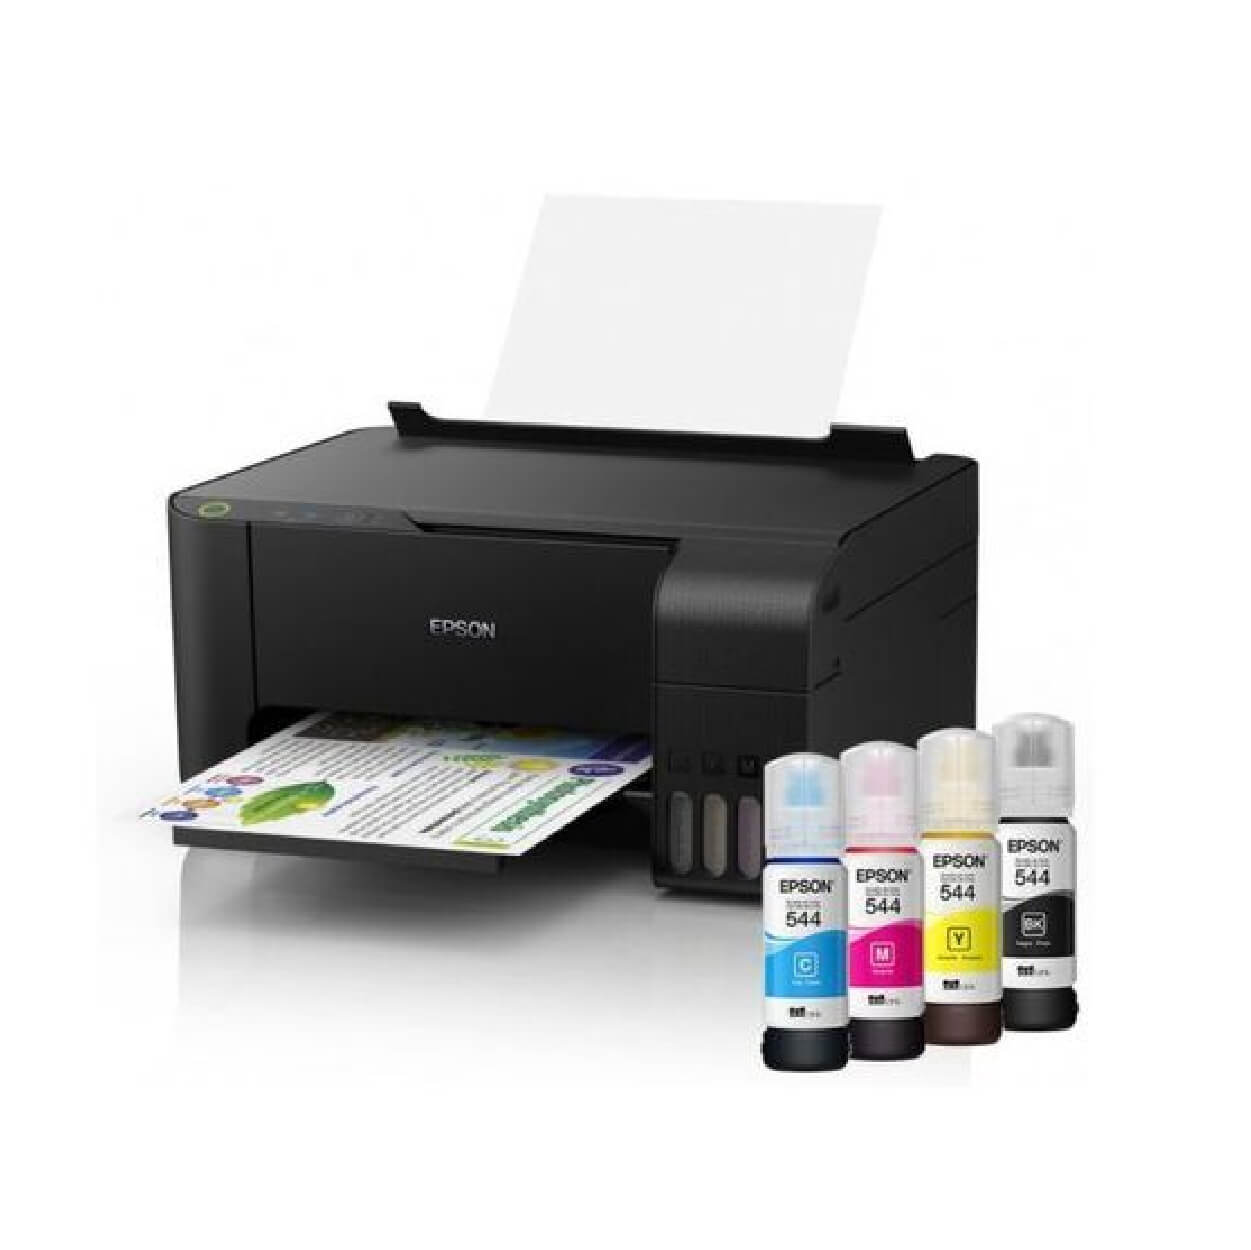 Epson EcoTank L3110- Print Copy Scan Tank Printer